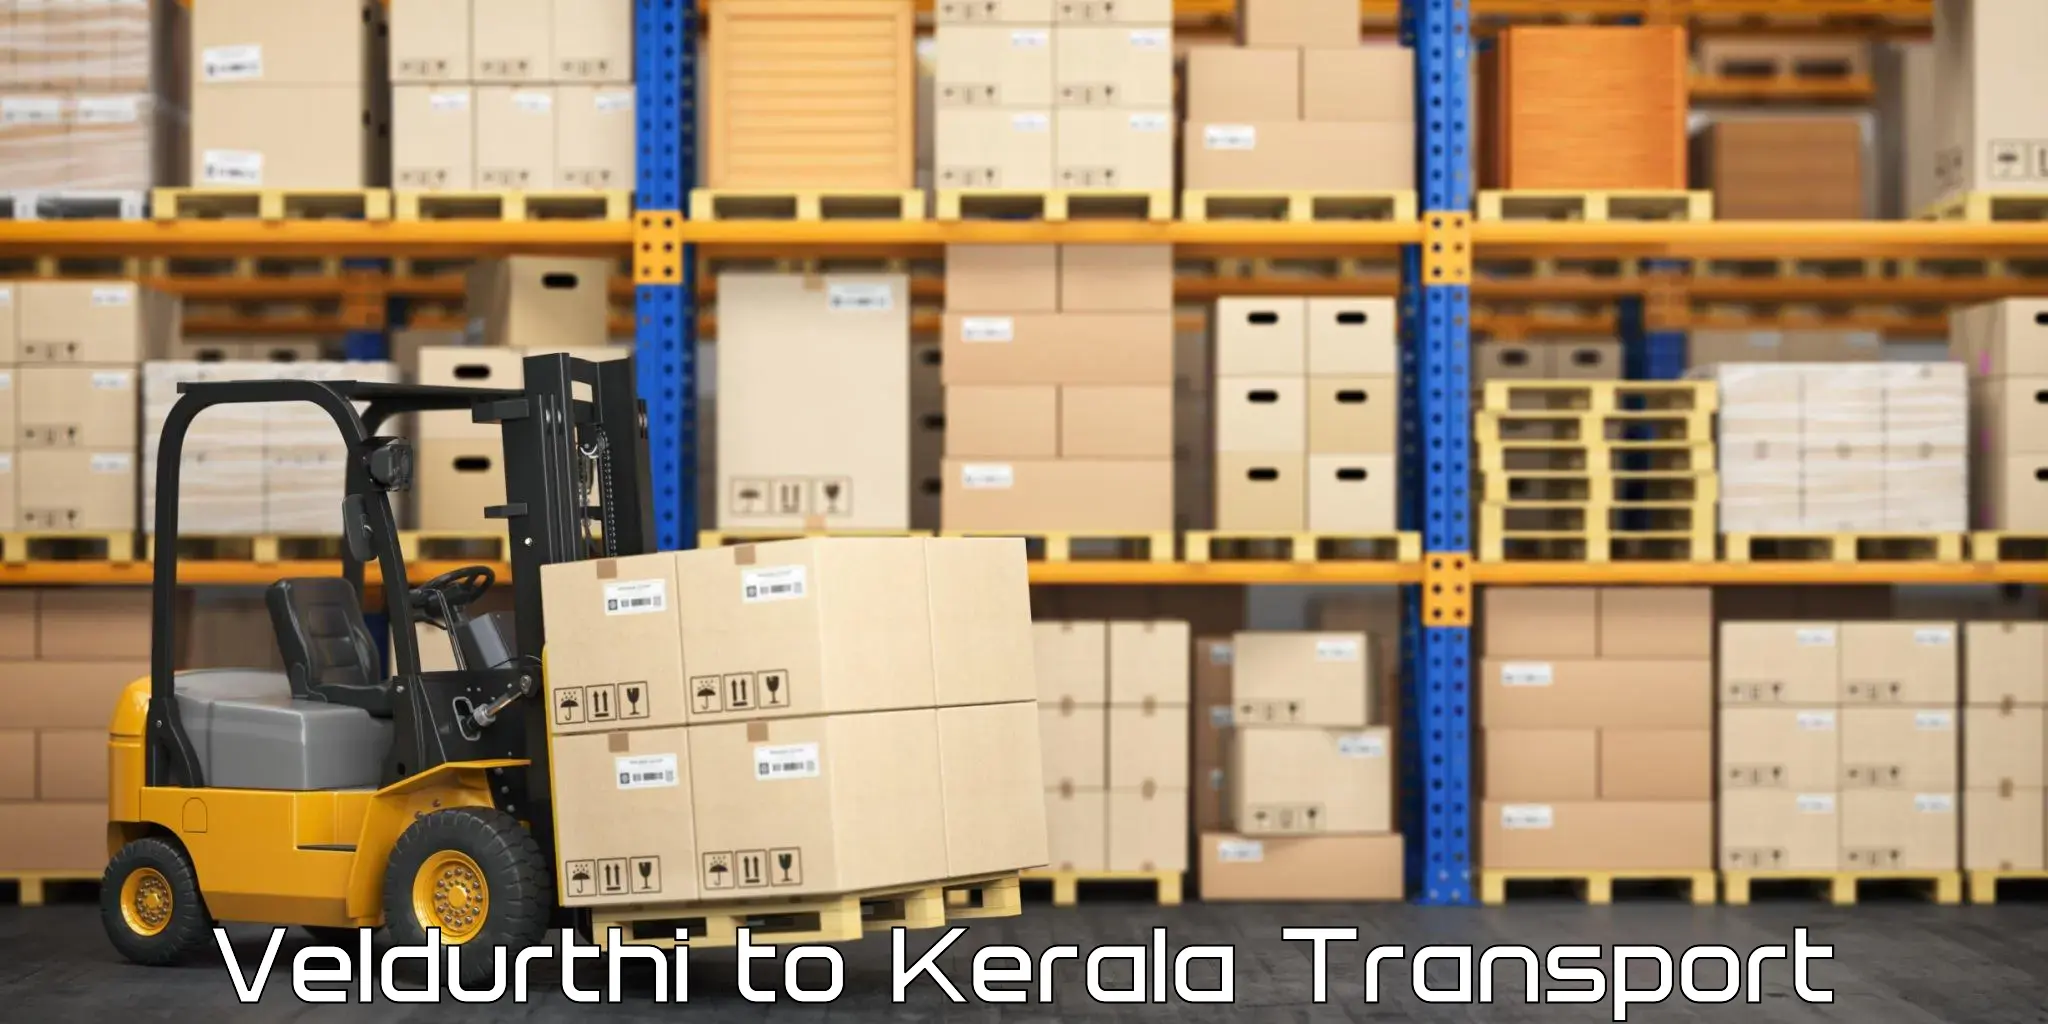 International cargo transportation services Veldurthi to Kochi